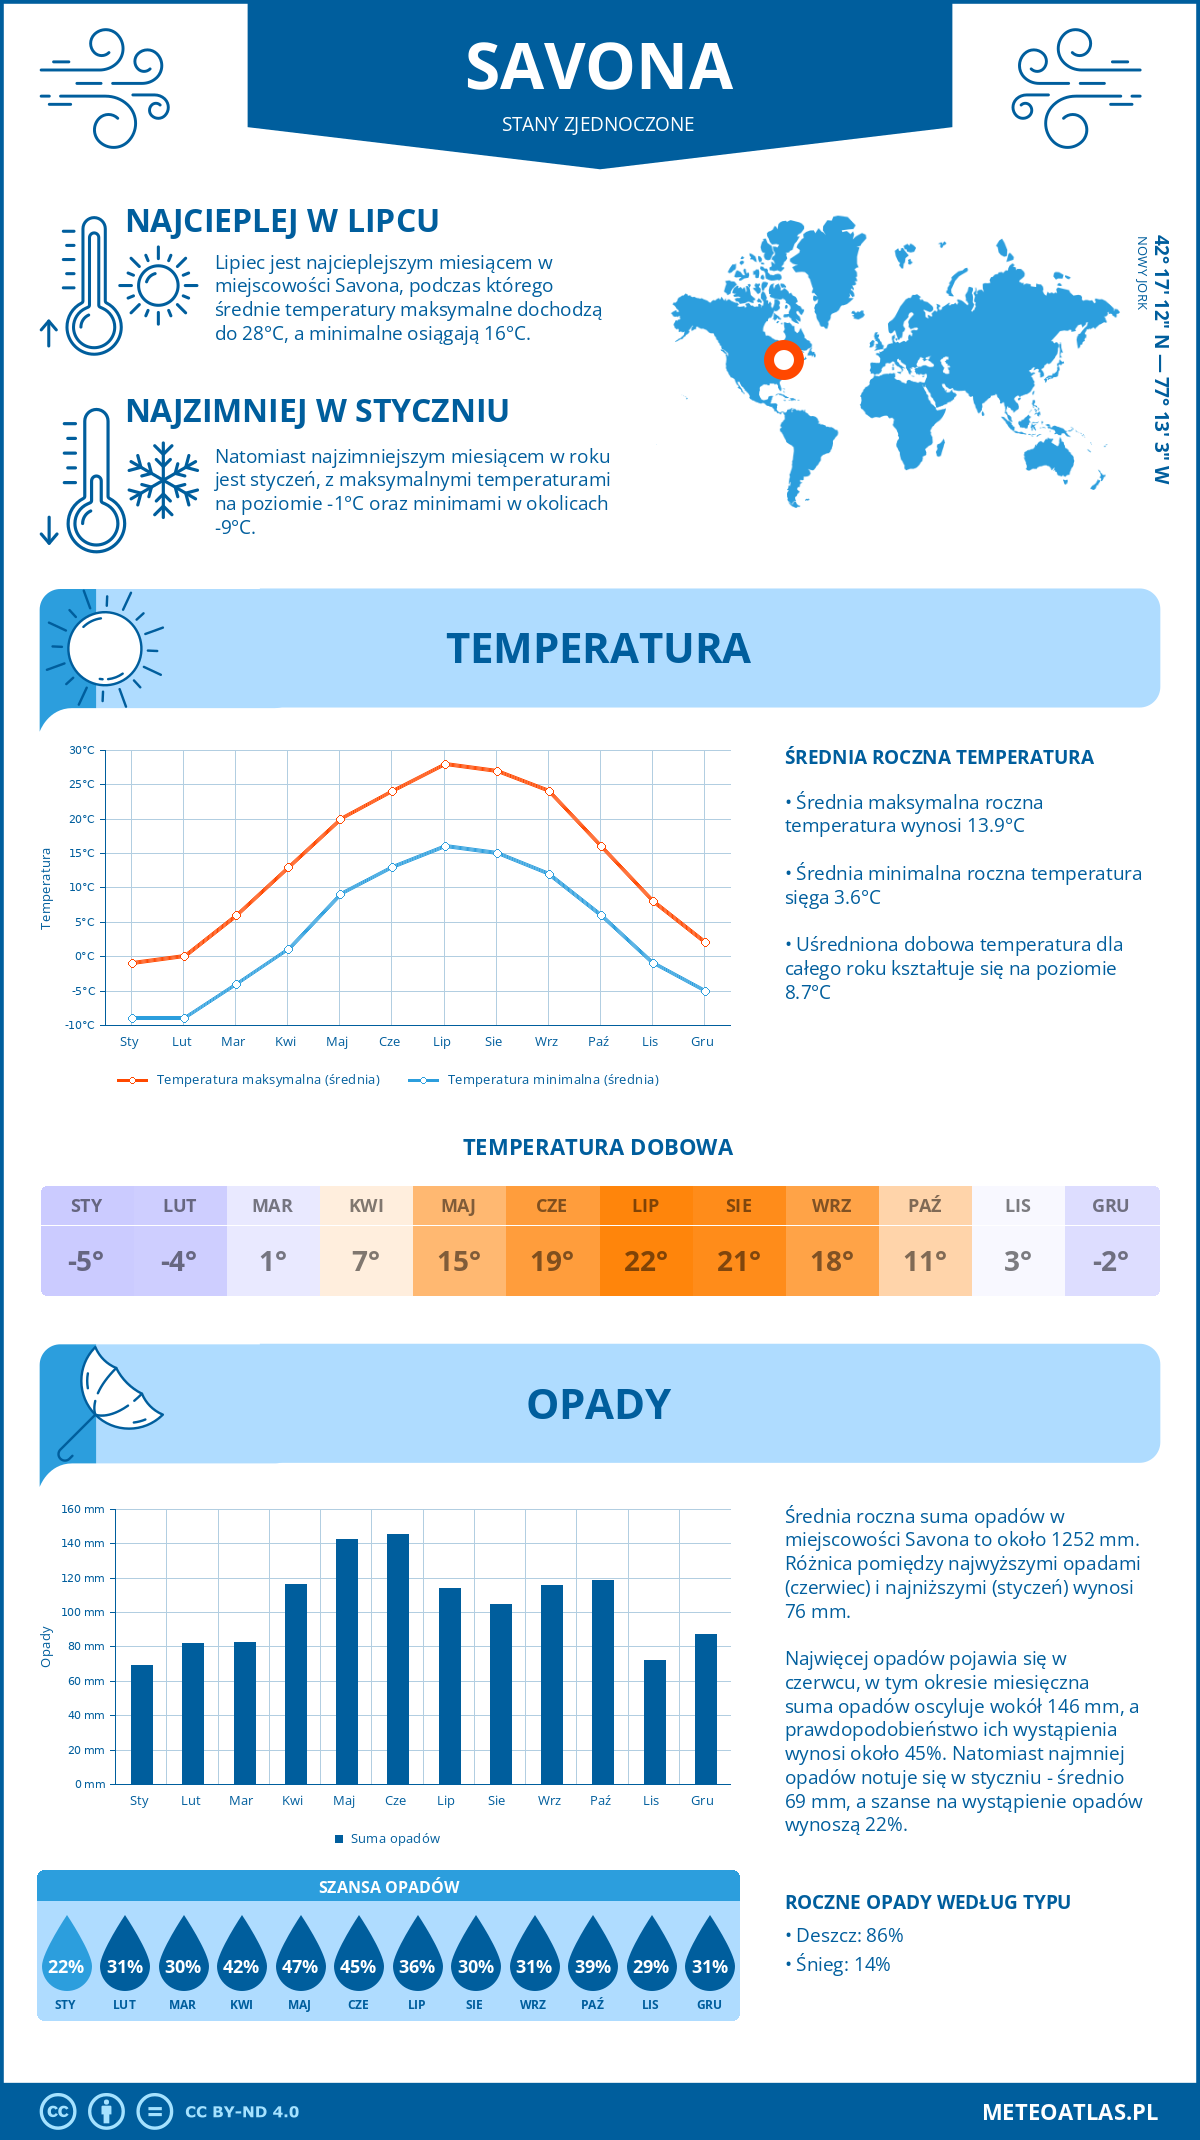 Pogoda Savona (Stany Zjednoczone). Temperatura oraz opady.